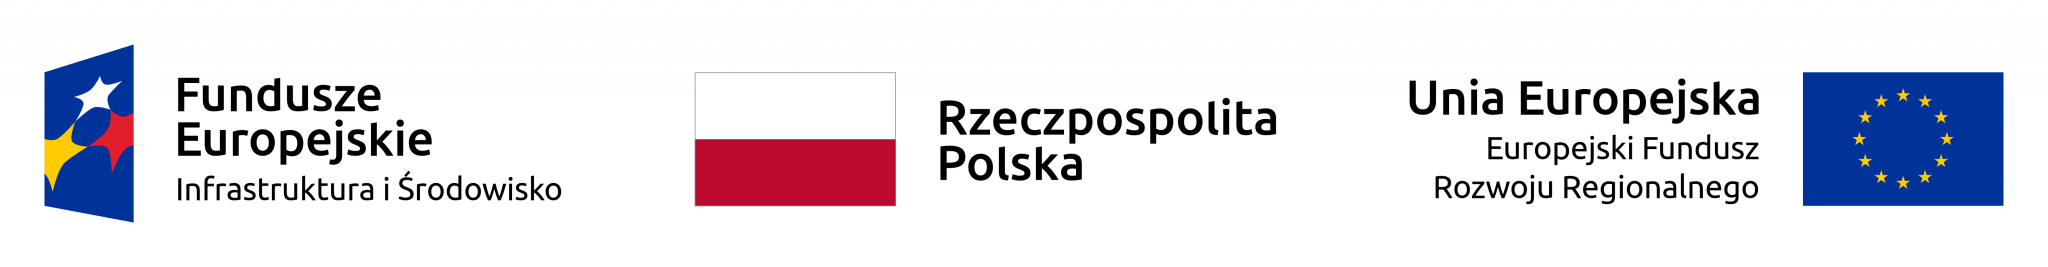 Logotypy funduszy europejskich, Rzeczpospolitej Polskiej, Unii Europejskiej